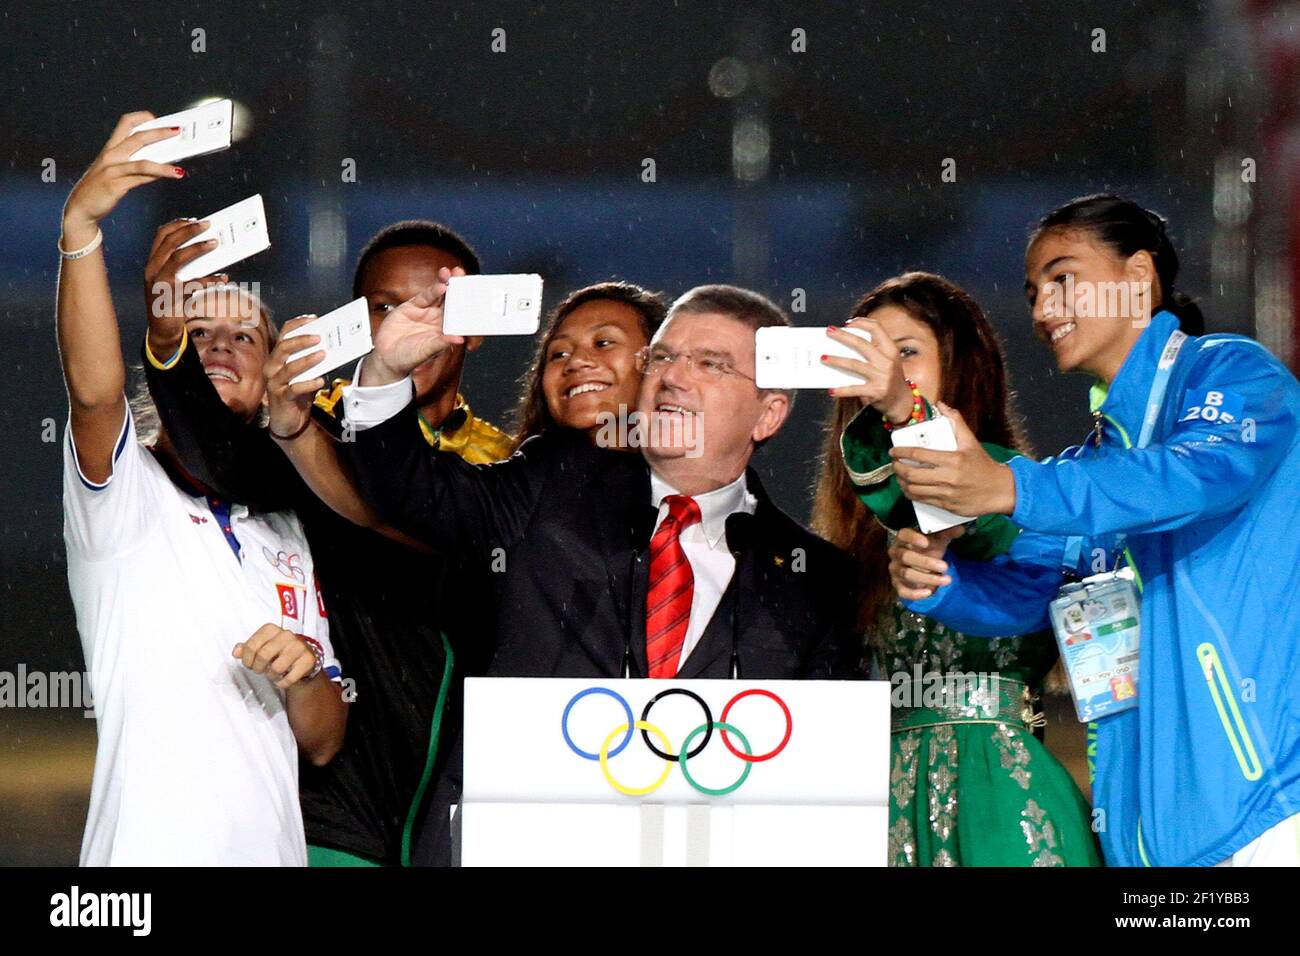 Thomas Bach (GER) Präsident des IOC macht ein Selfie mit jungen Athleten , während der Eröffnungsfeier 2014 der Olympischen Jugendspiele in Nanjing, Ostchina Jiangsu, Tag 1, am 16. August 2014. Foto Eddy Lemaistre / KMSP / DPPI Stockfoto